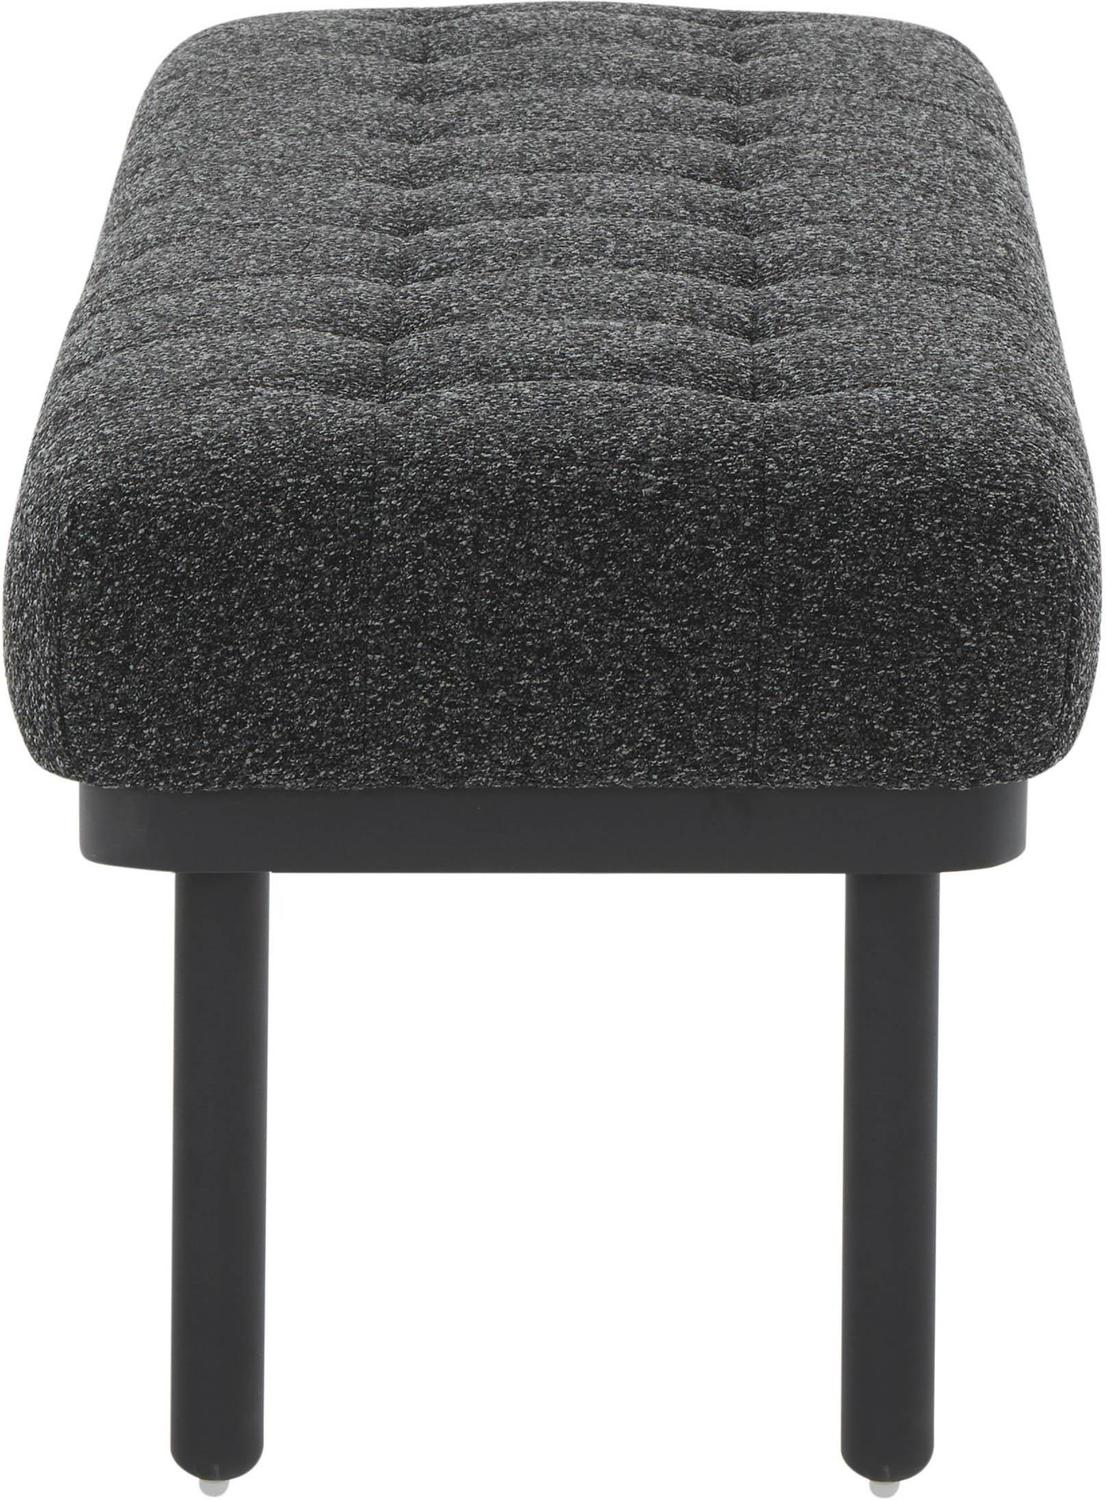 fabric ottoman Contemporary Design Furniture Benches Black